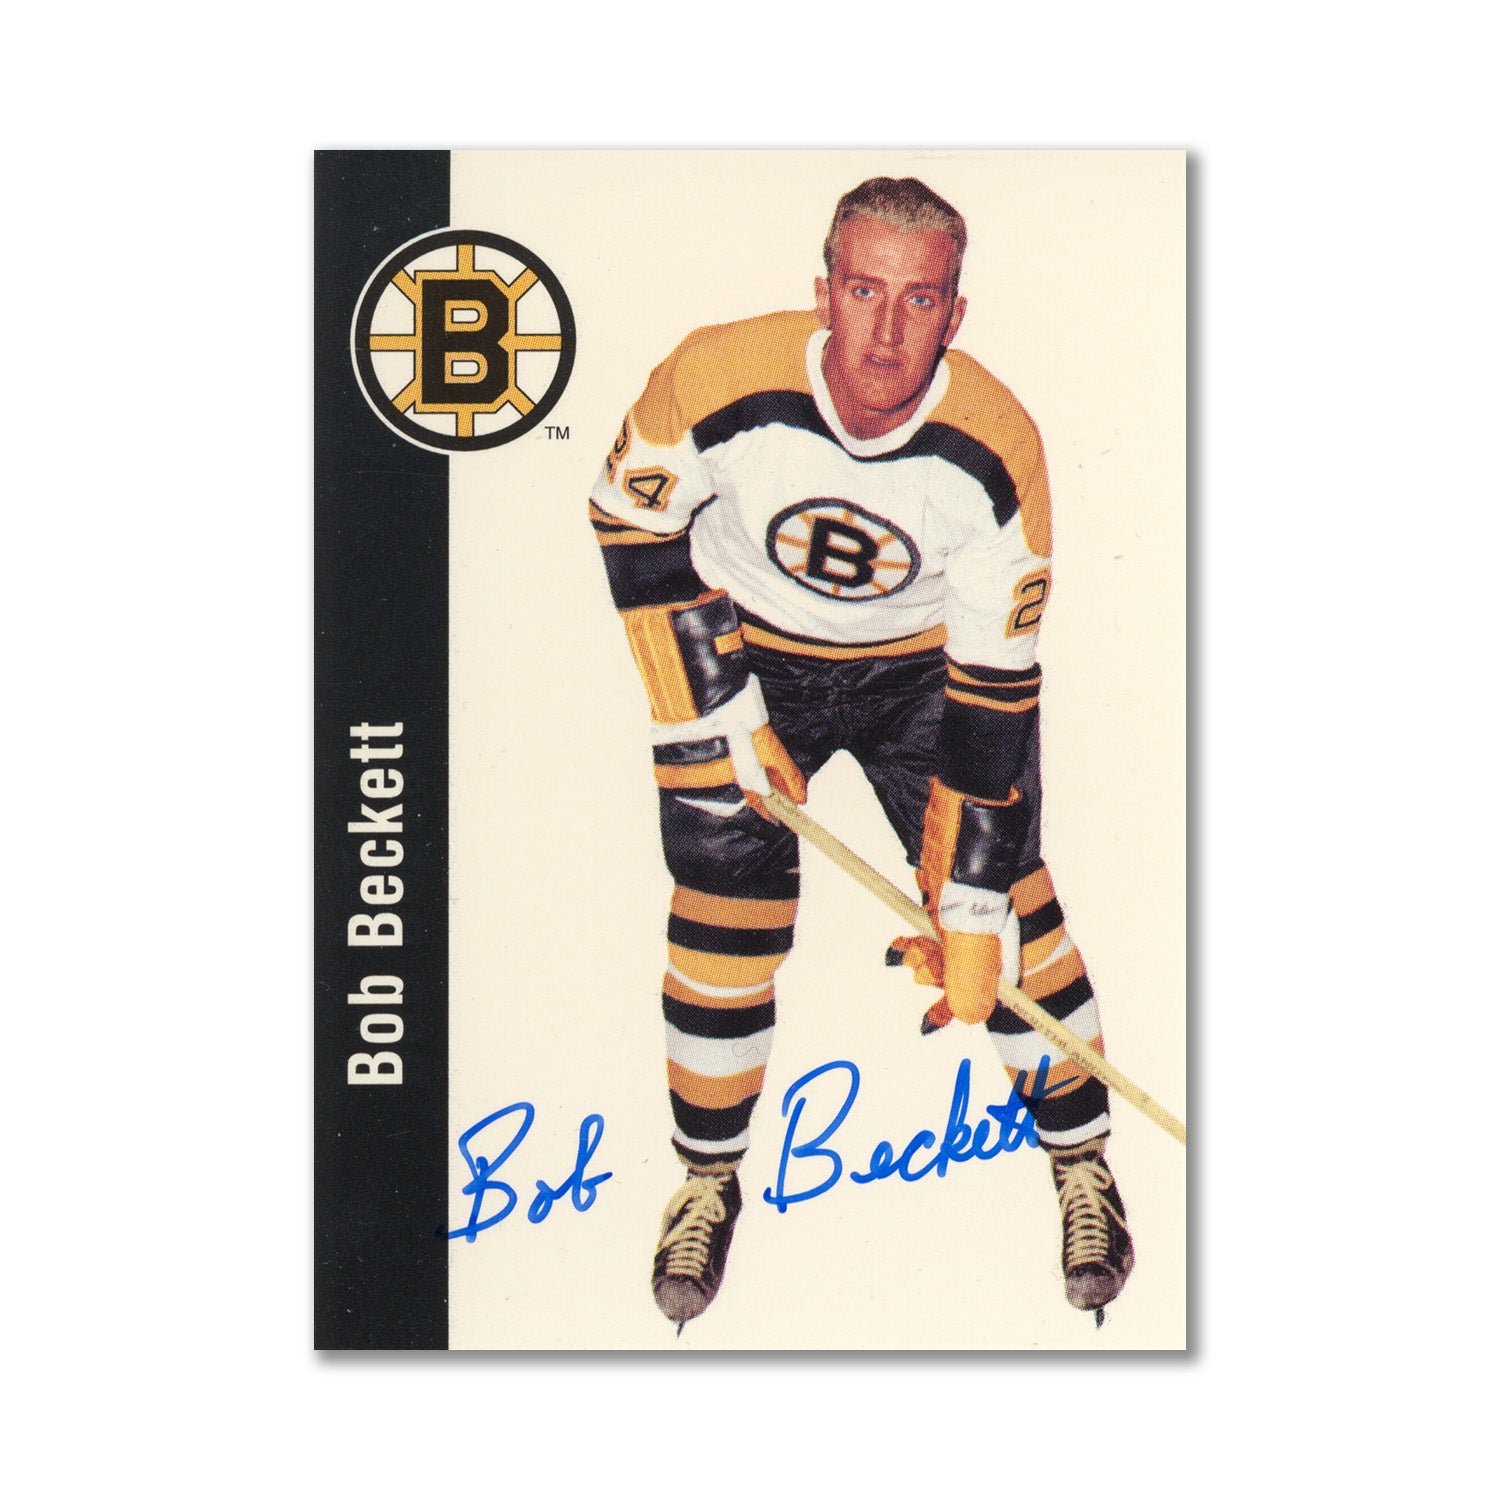 Autographed 1994 Parkhurst Missing Link #13 Bob Beckett Hockey Card